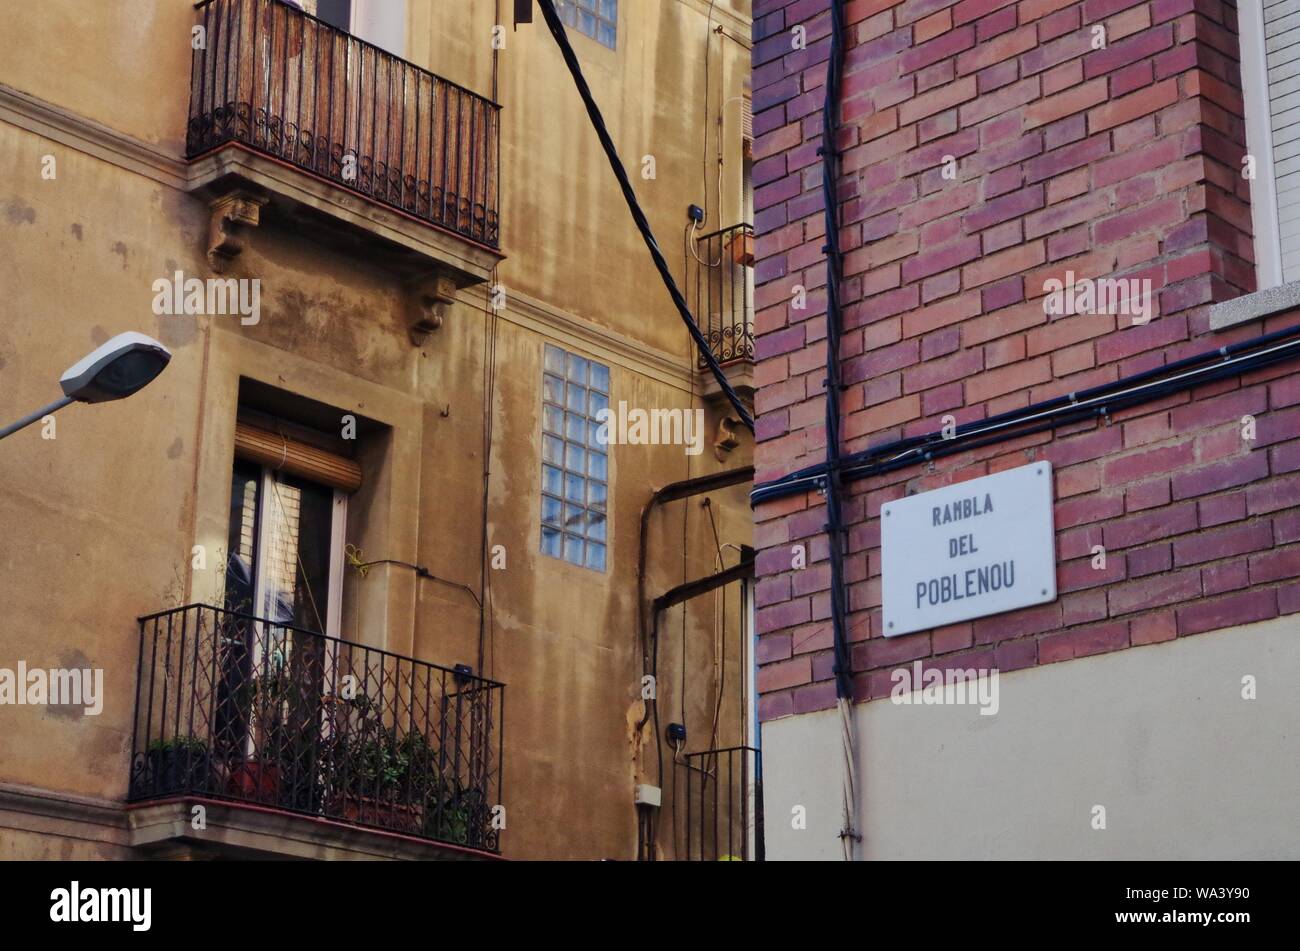 Placa Nomenclator en la "avenida de la Rambla del Poblenou de Barcelona Foto de stock